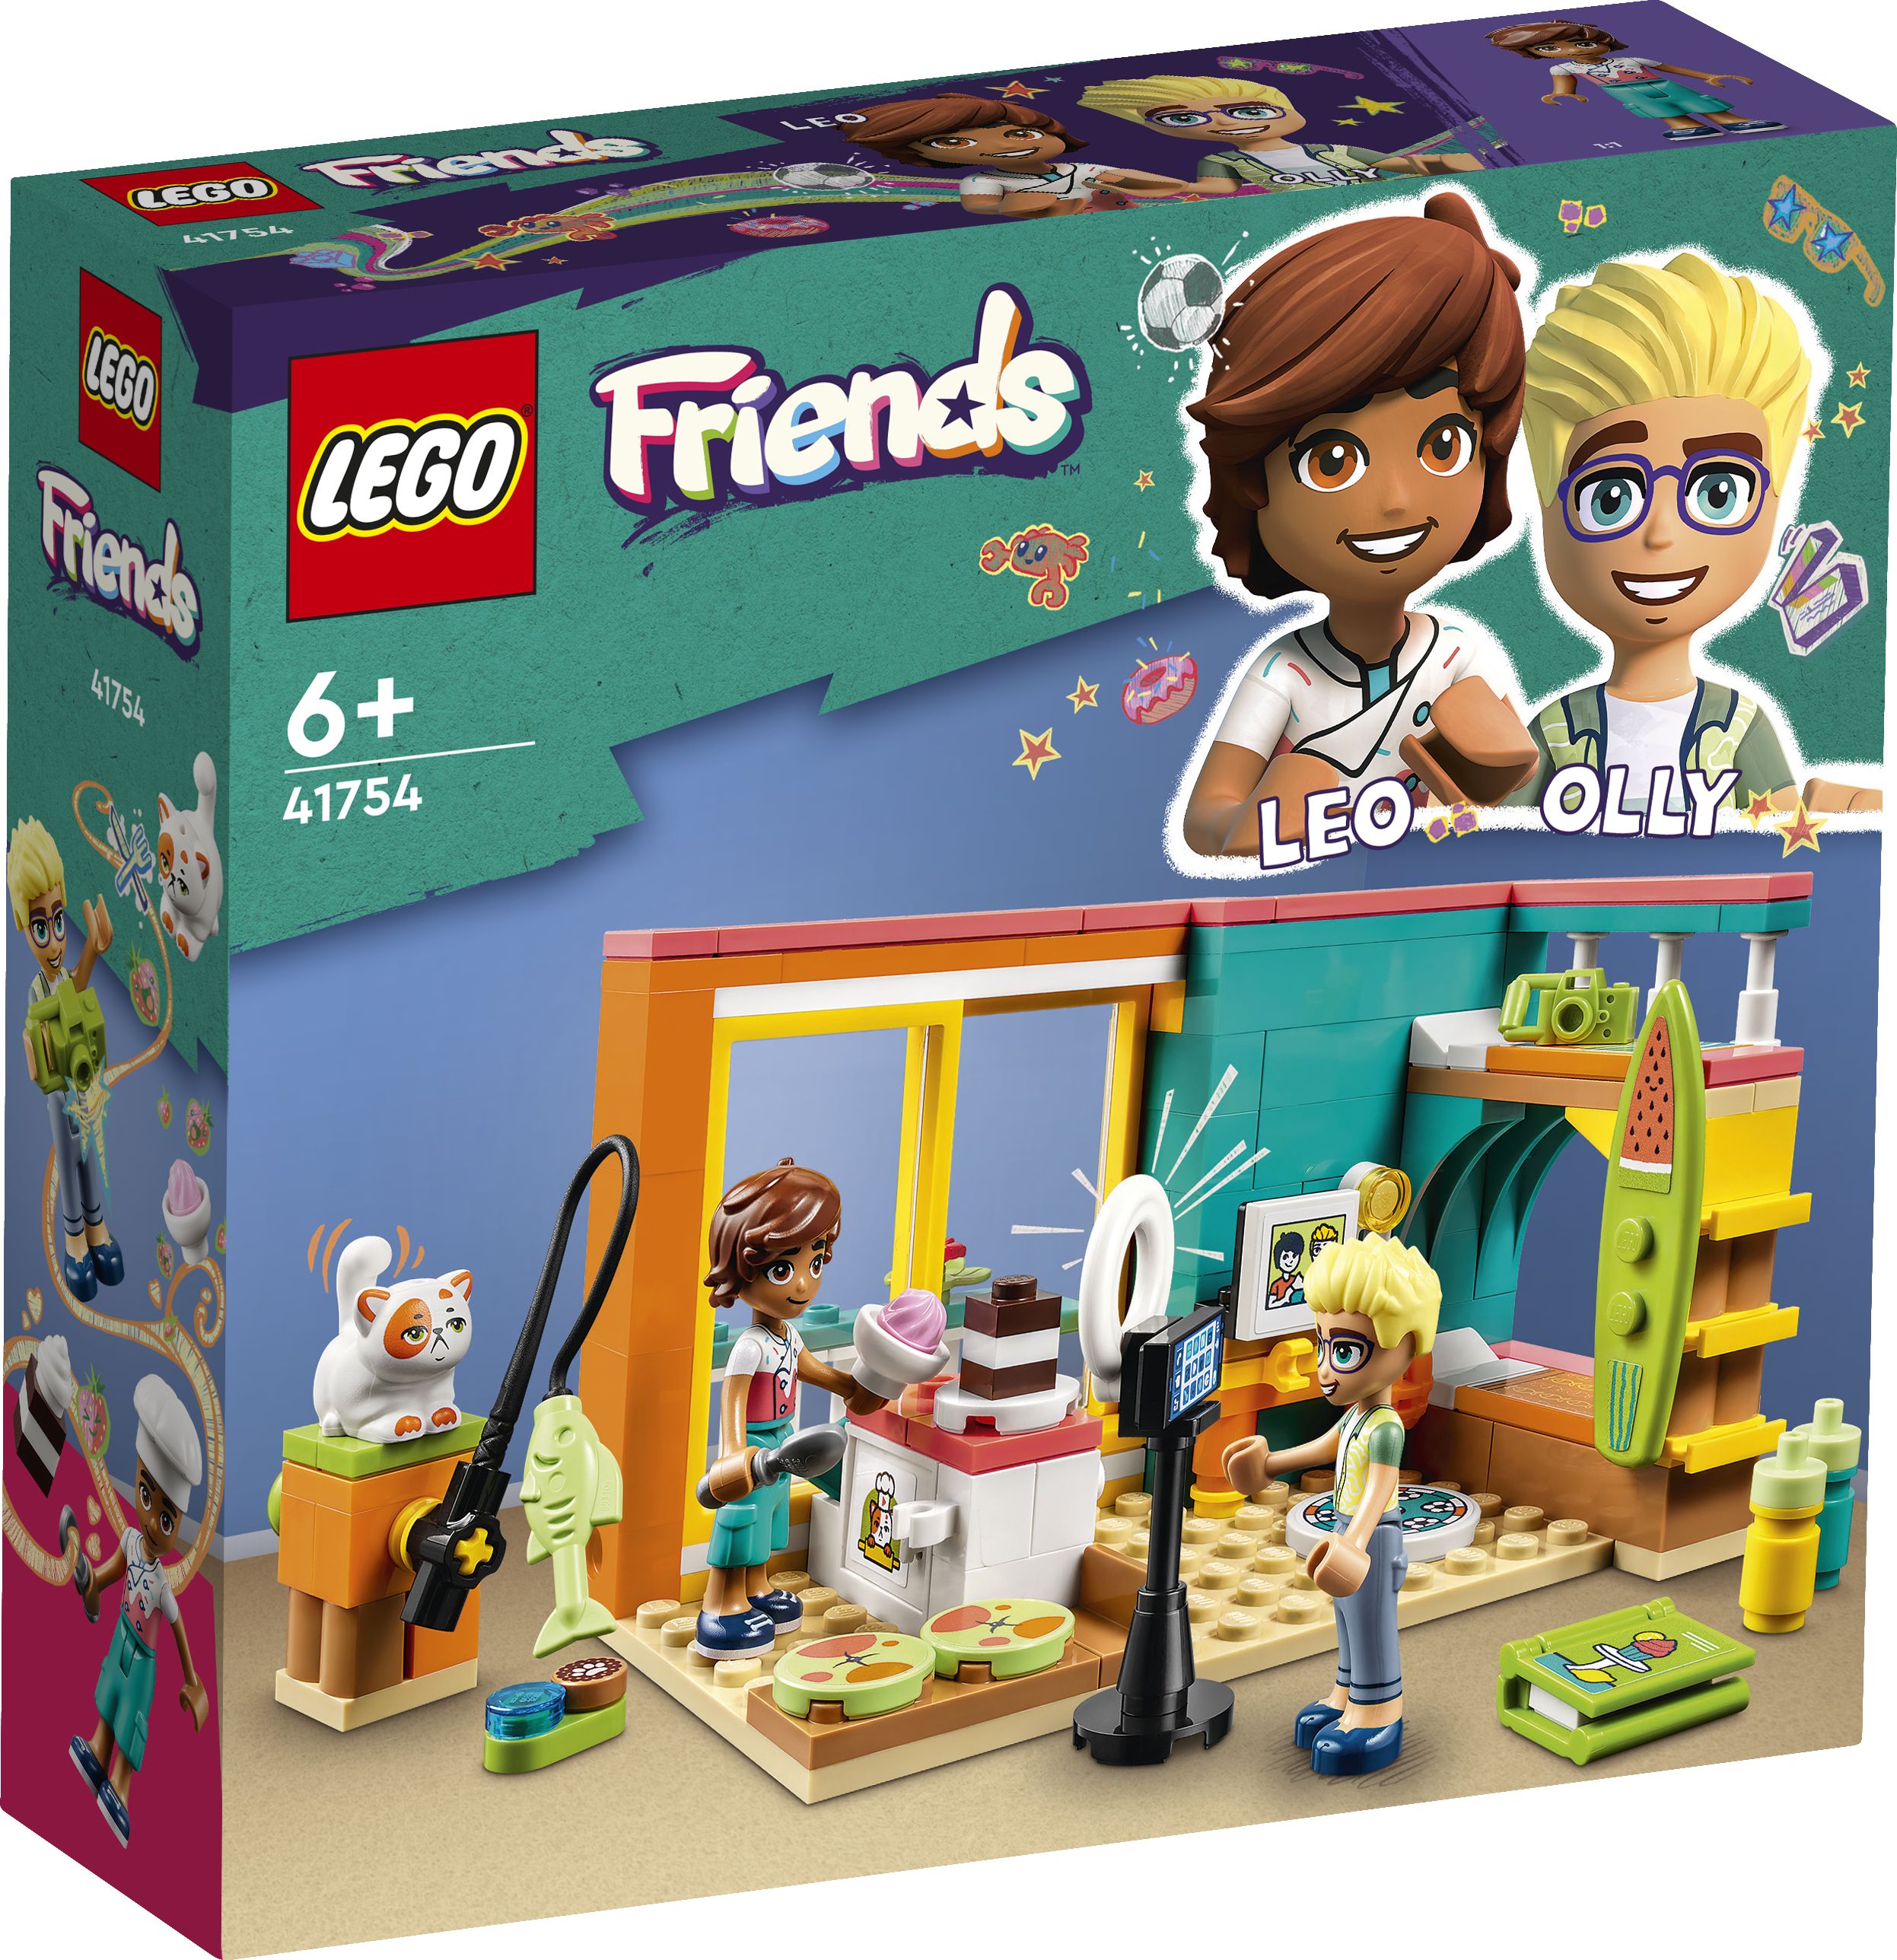 LEGO Friends 41754 Leos Zimmer LEGO_41754_Box1_v29.jpg